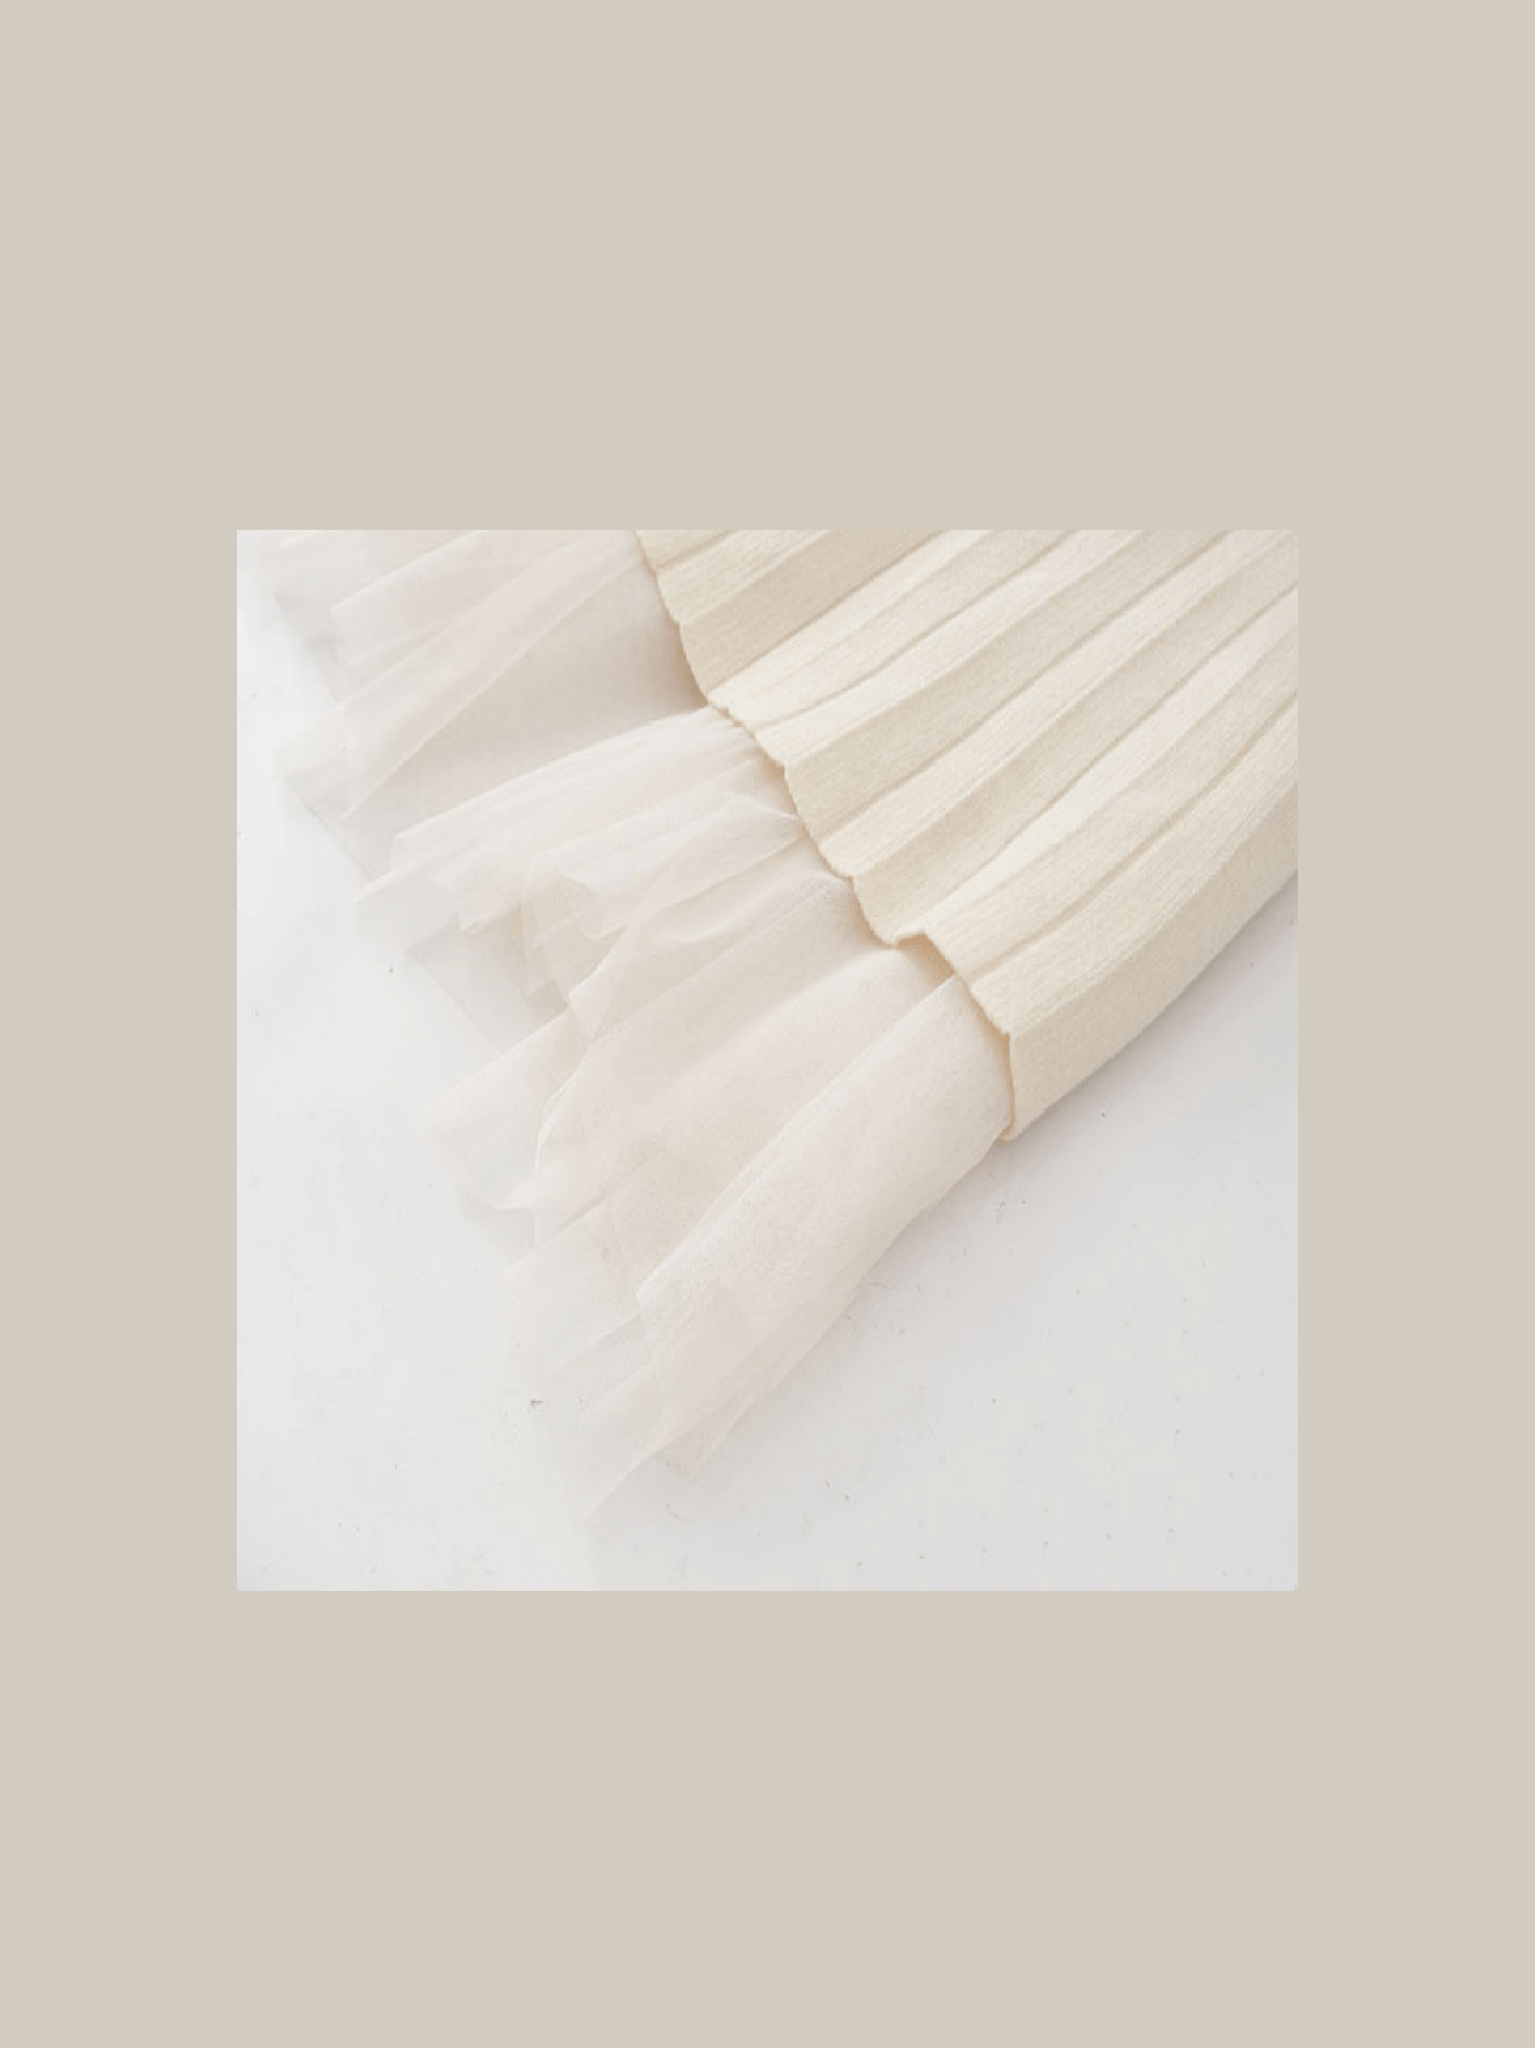 Lace Stitching Ribbon Knit Skirt - LOVE POMME POMME